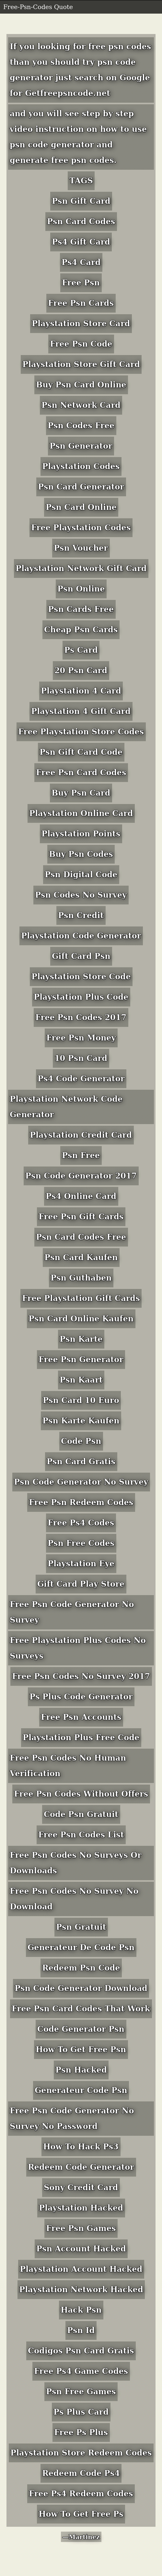 get free psn code